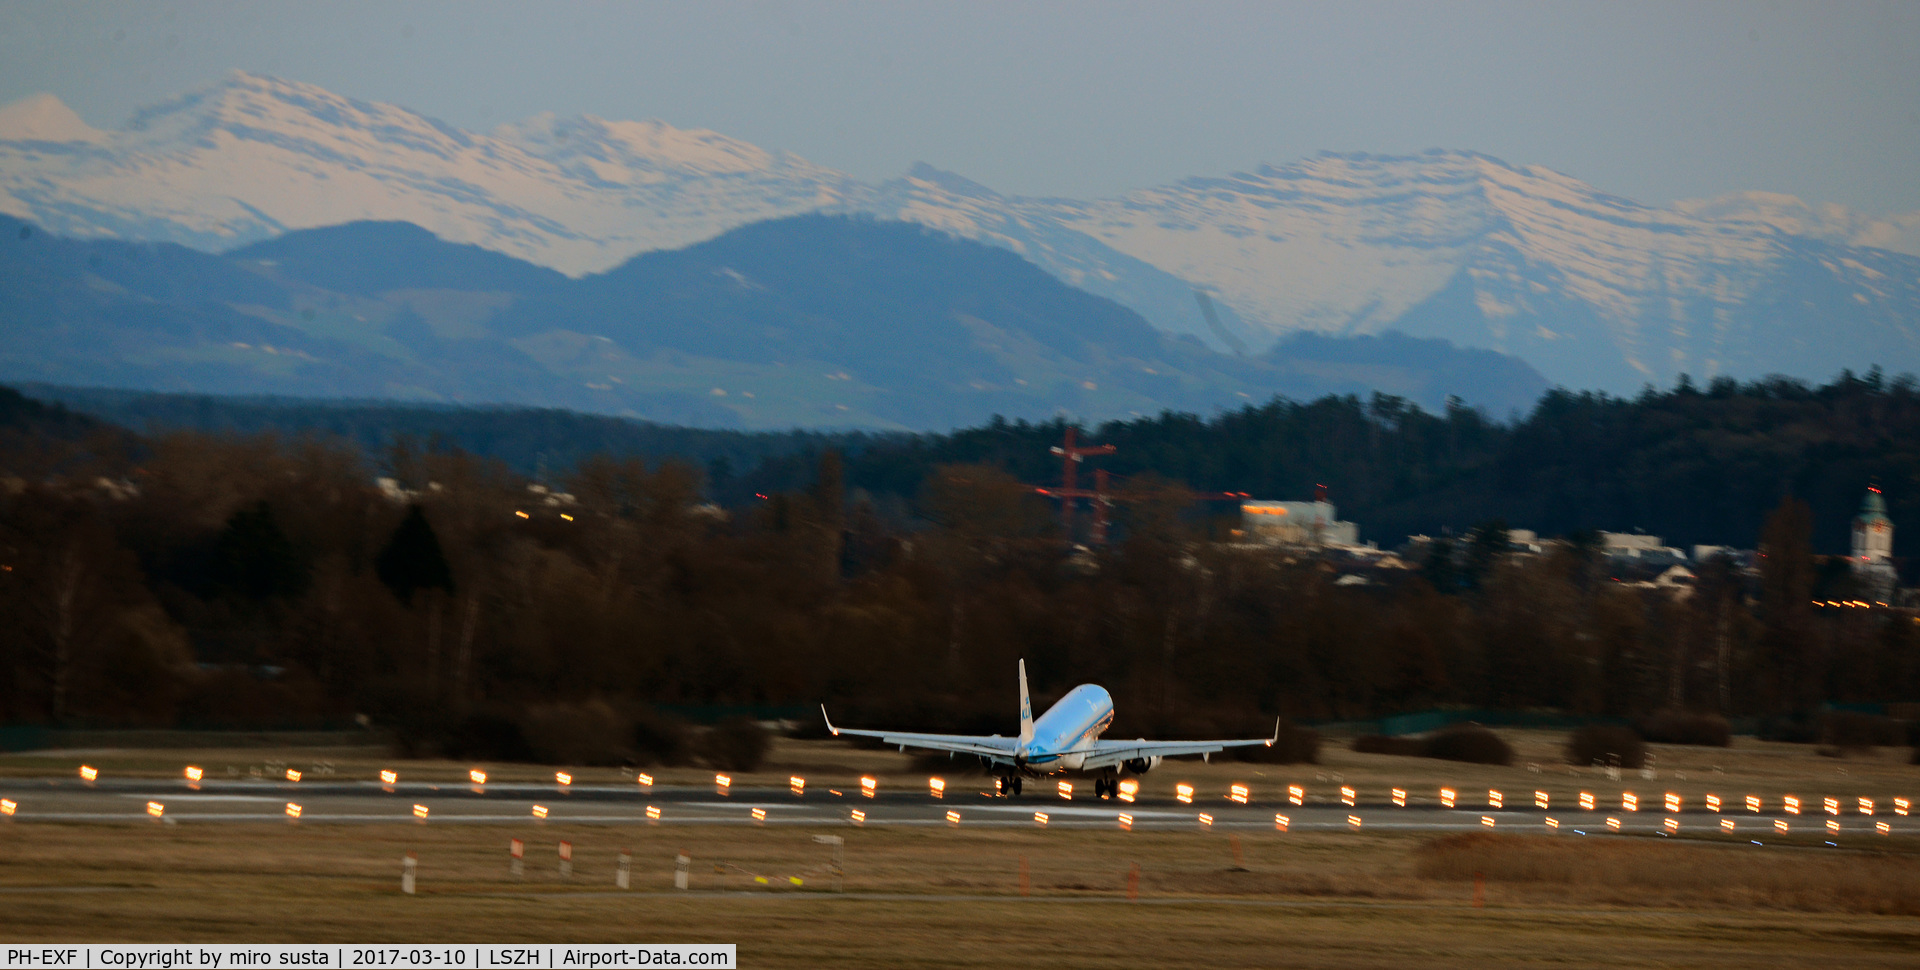 PH-EXF, 2015 Embraer 190STD (ERJ-190-100) C/N 19000690, KLM Cityhopper Embraer ERJ-190-100 airplane landing at Zurich-Kloten International Airport in Switzerland